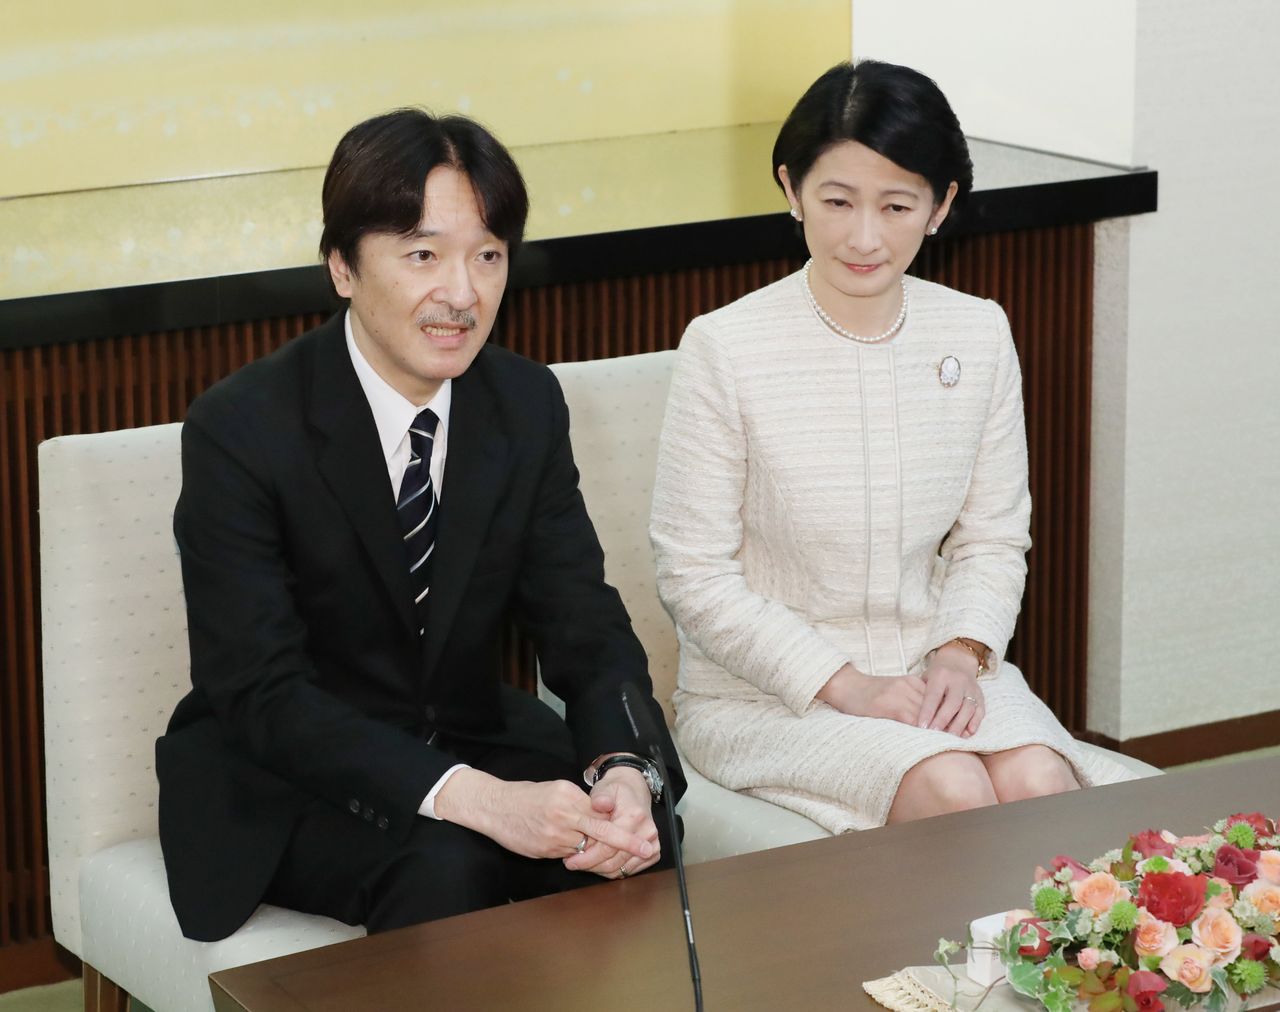 Le 22 novembre 2018, le prince Akishino a donné une conférence de presse à sa résidence de Tokyo en compagnie de son épouse, la princesse Kiko. À cette occasion, le couple a répondu à des questions à propos du report du mariage de leur fille ainée, la princesse Mako. (Jiji Press)